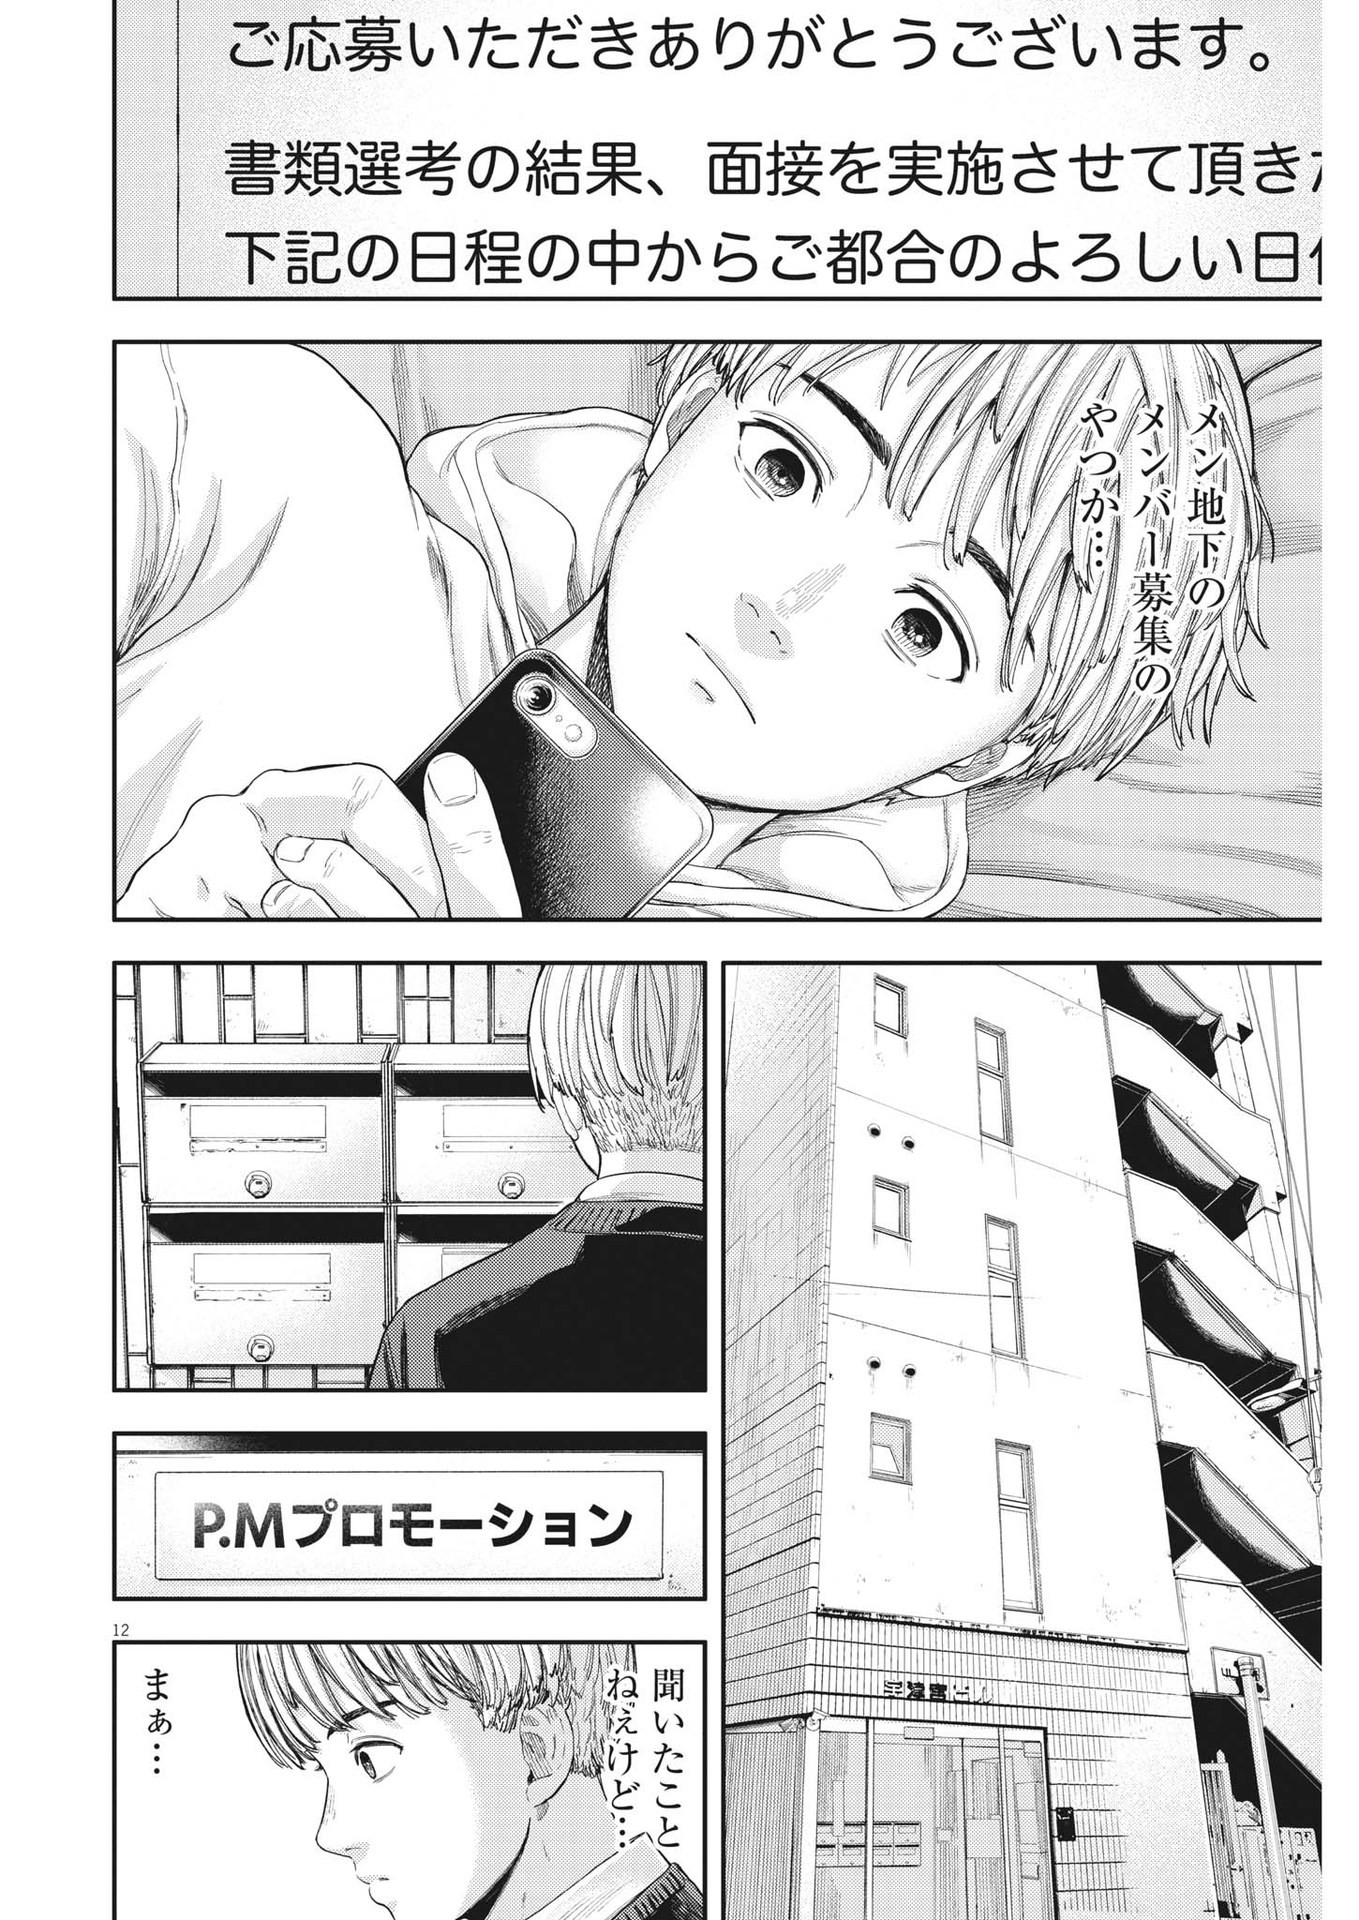 Yumenashi-sensei no Shinroshidou - Chapter 7 - Page 12